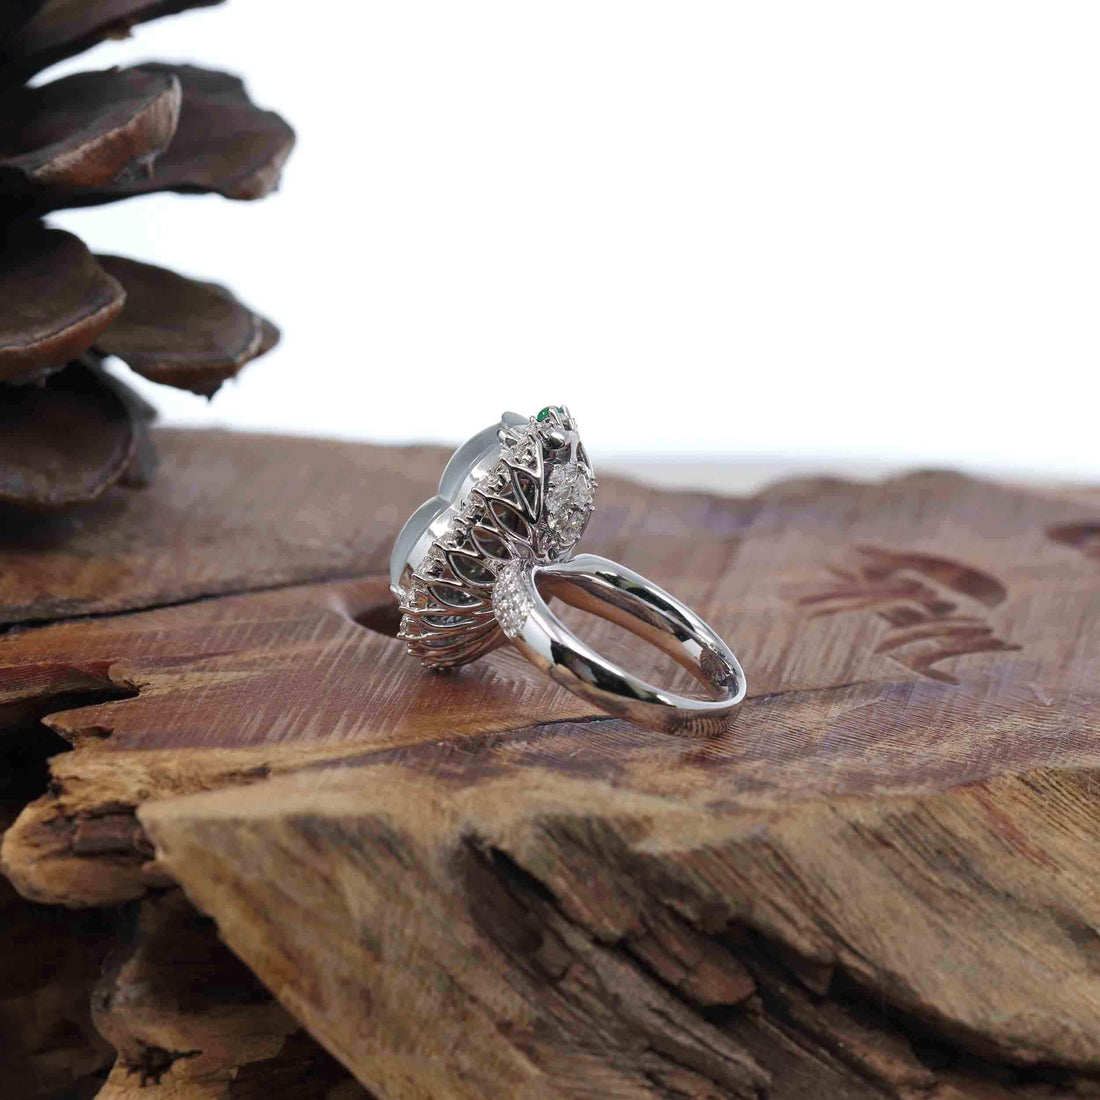 Baikalla Jewelry Jadeite Engagement Ring 18k White Gold Natural Ice Jadeite Jade Engagement Ring With Diamonds 2 in 1